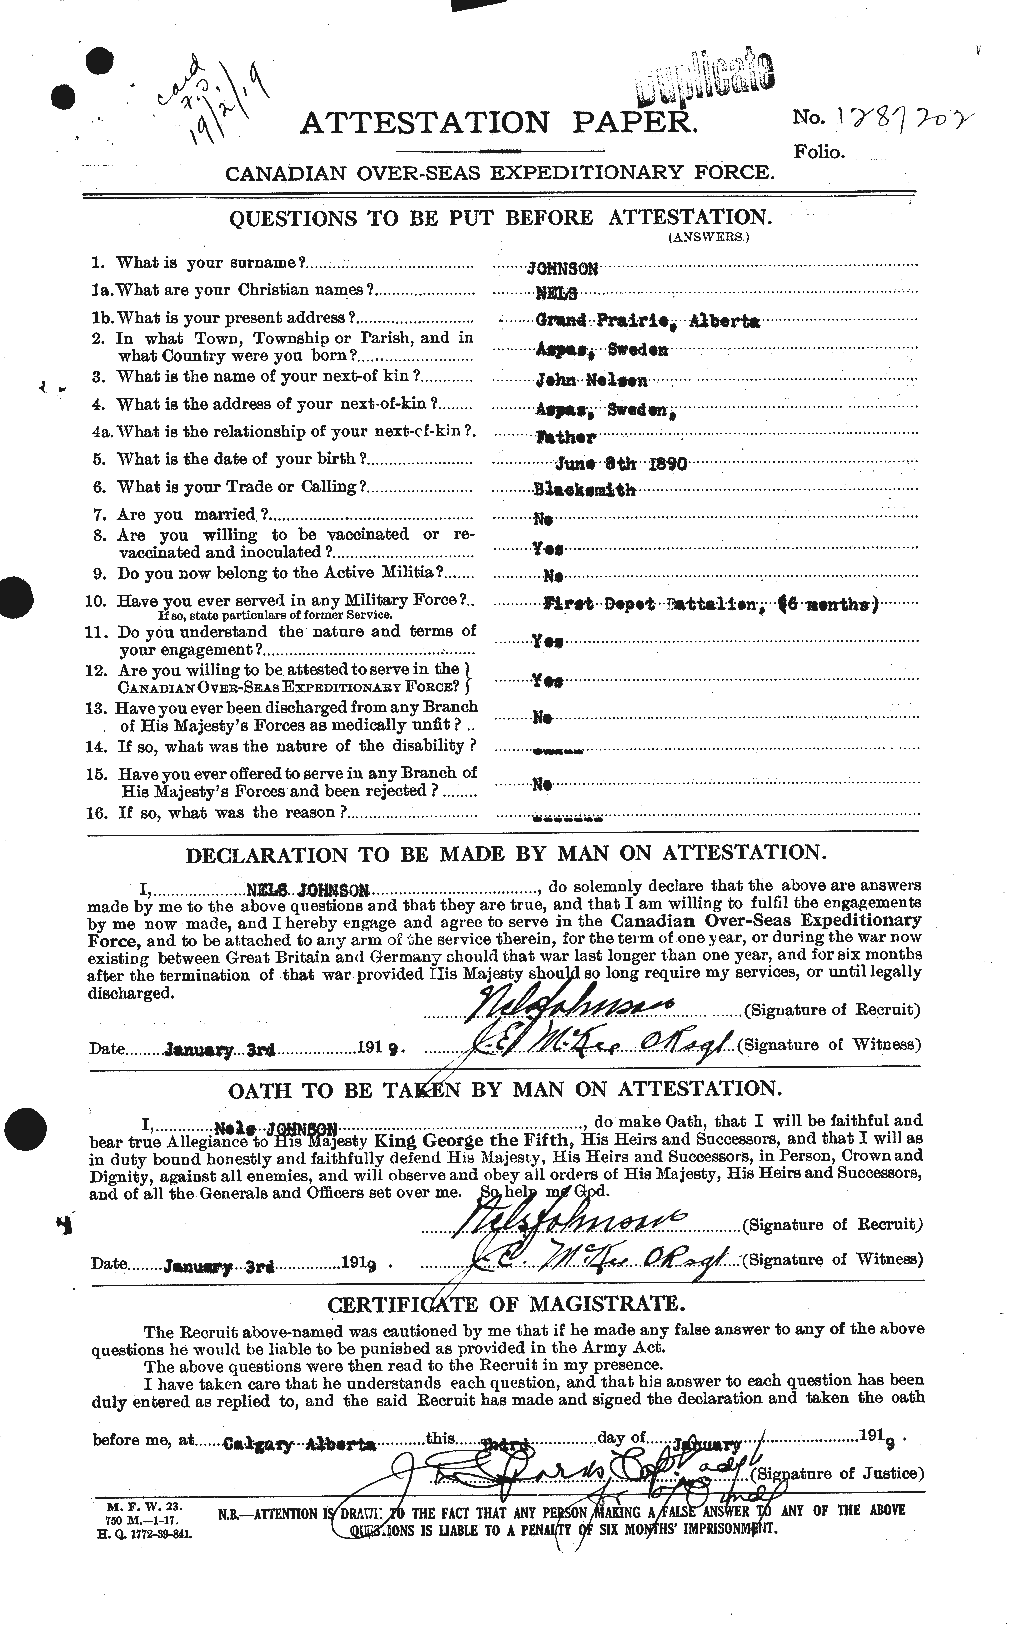 Dossiers du Personnel de la Première Guerre mondiale - CEC 422158a